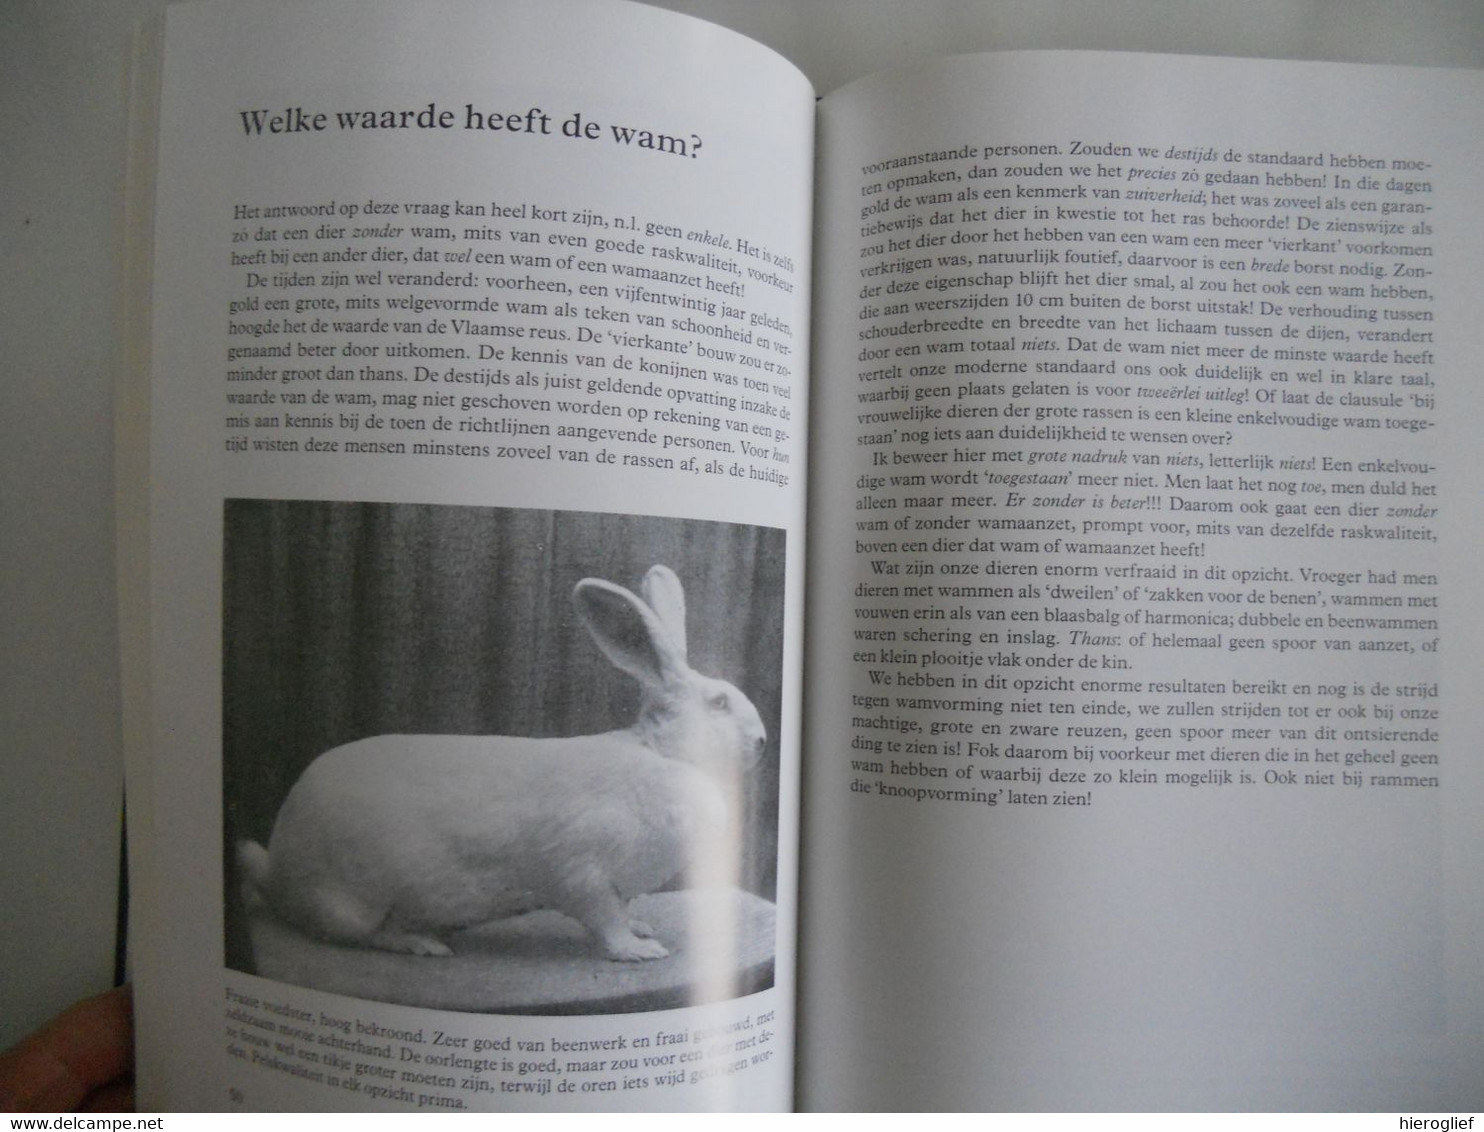 DE VLAAMSE REUS in woord en beeld door K. Steenhuis / onze liefhebberij door C. Schouten konijnen kweken